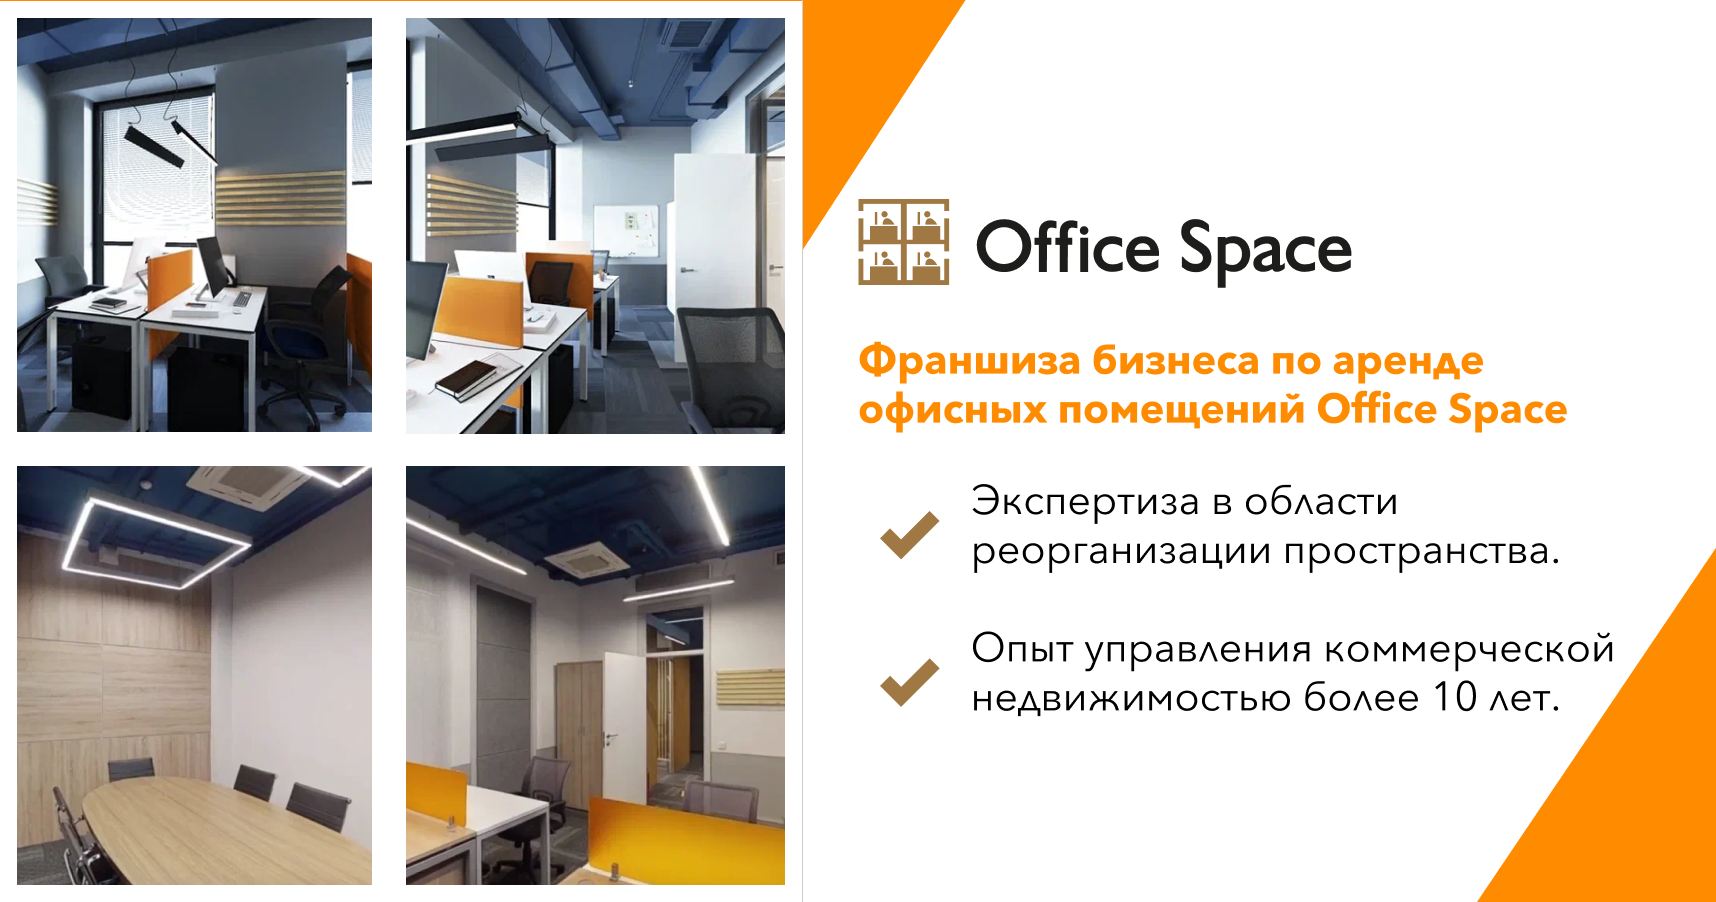 Франшиза бизнеса по аренде офисных помещений Office Space